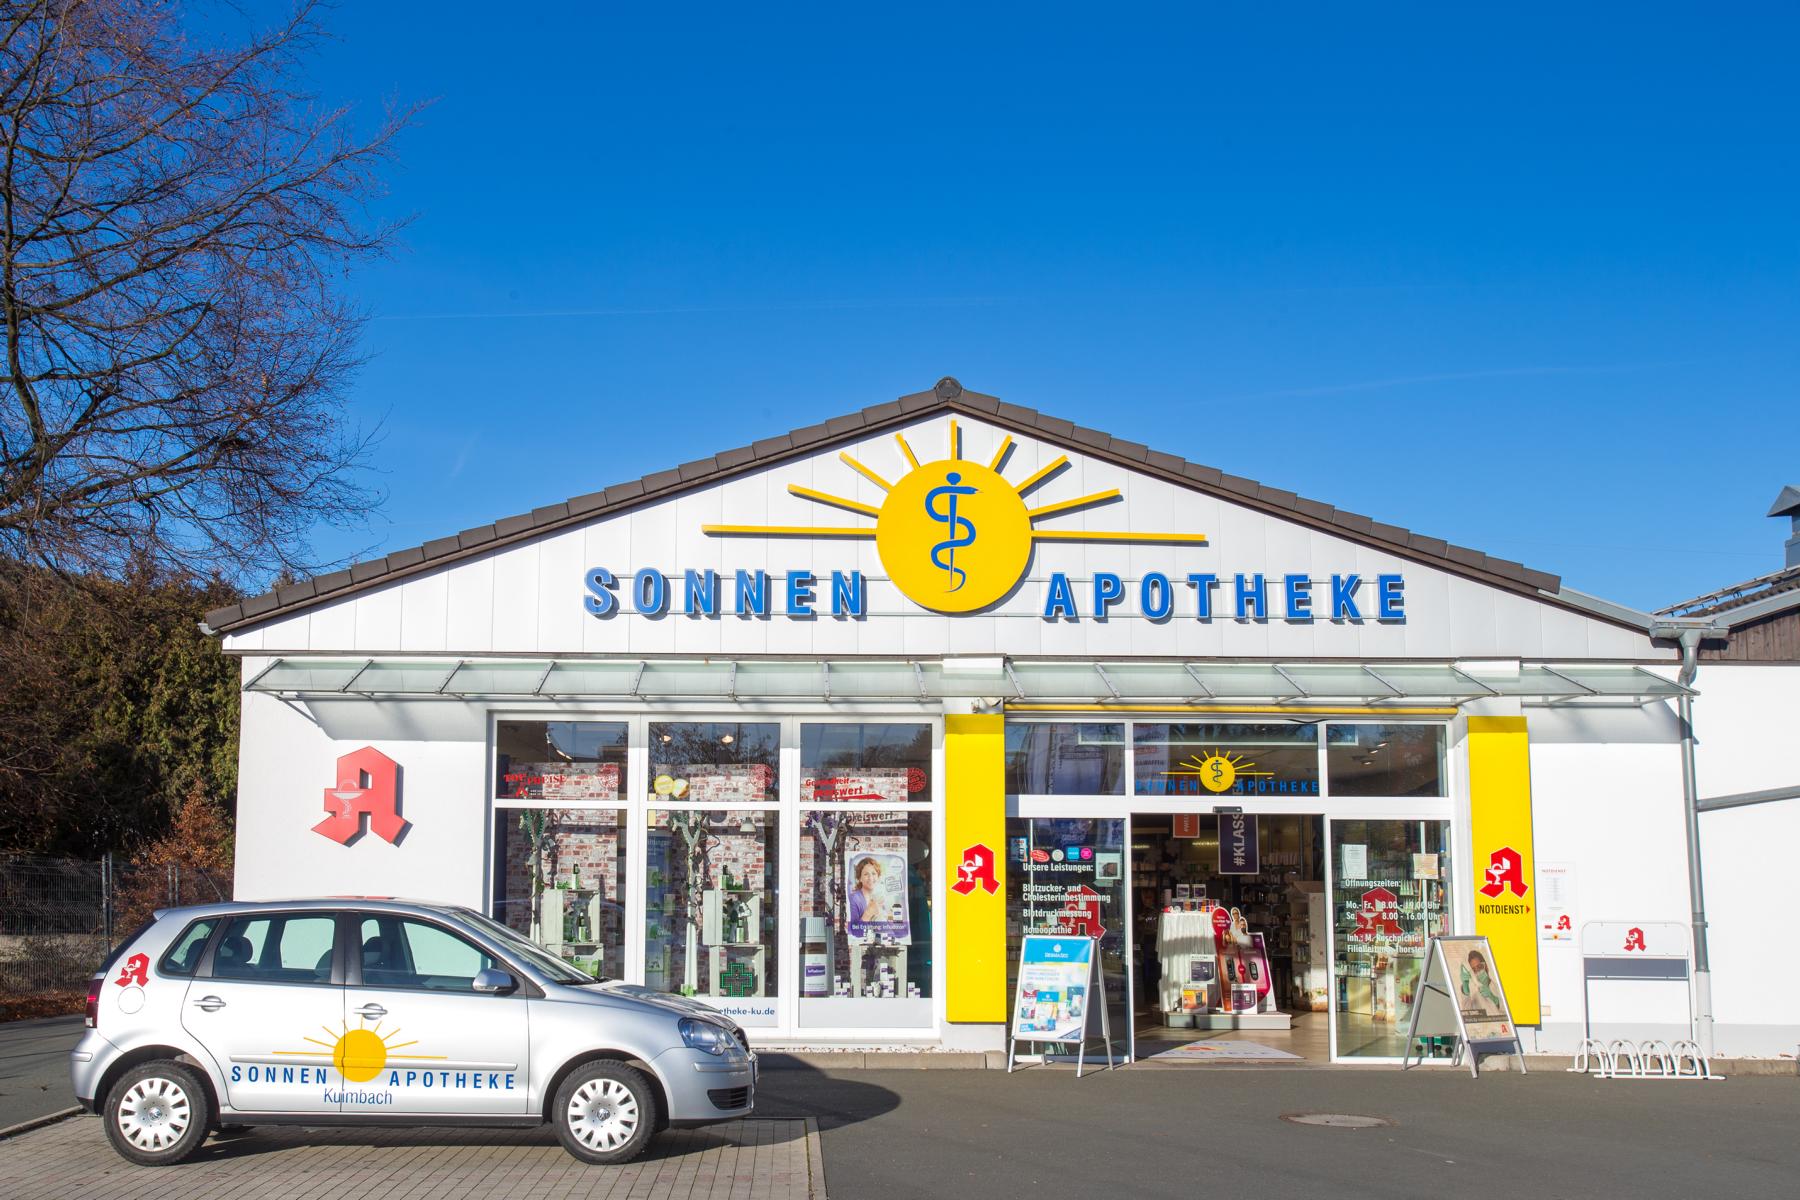 Sonnen-Apotheke in Kulmbach